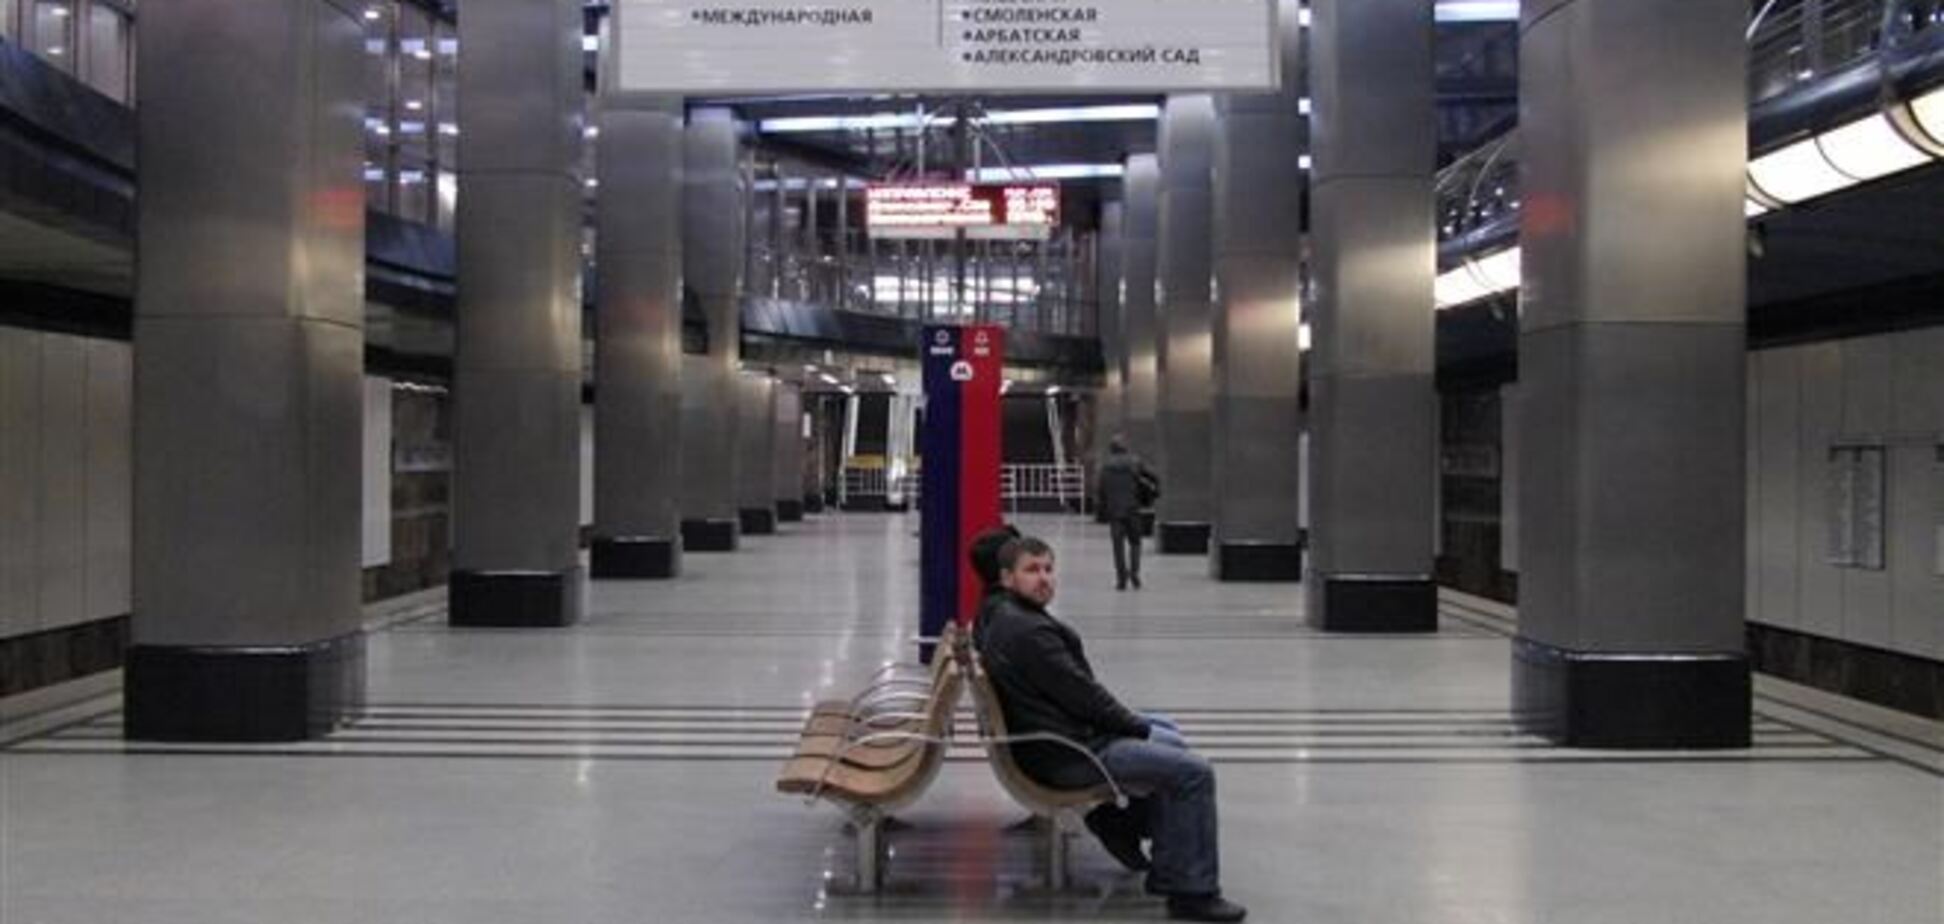 В Москве жетон на метро теперь можно получить за 30 приседаний